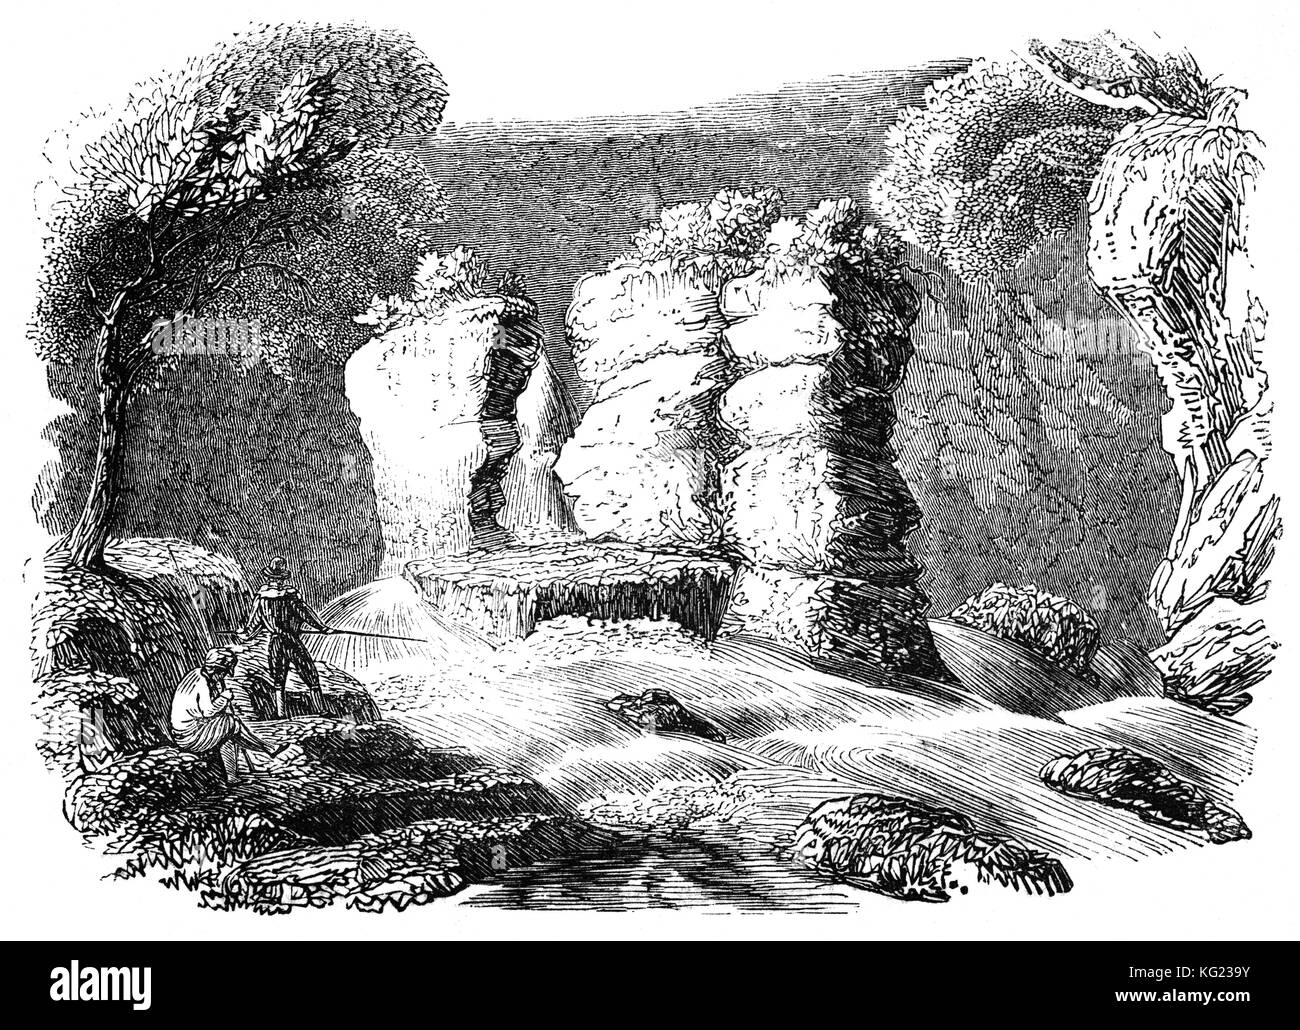 Angler gegenüber Hugh Lloyd's Kanzel, in der Nähe der Ffestiniog. Die Spalte der Rock ist Teil der niedrigeren der zwei Wasserfälle, die auf dem Fluss Cynfal. Dieser schöne Ort ist als Cymorthyn bekannt und Legende schlägt vor, dass Hugh Lloyd von Cynfal Fawr, ein Dichter aus dem 17. Jahrhundert, Astrologen und Magier, verwendet dieser Spot zu besuchen Beschwörungen zu liefern, Gebete für lokale Dorfbewohner führen und Dämonen und böse Geister zu vertreiben. Snowdonia National Park, North Wales Stockfoto